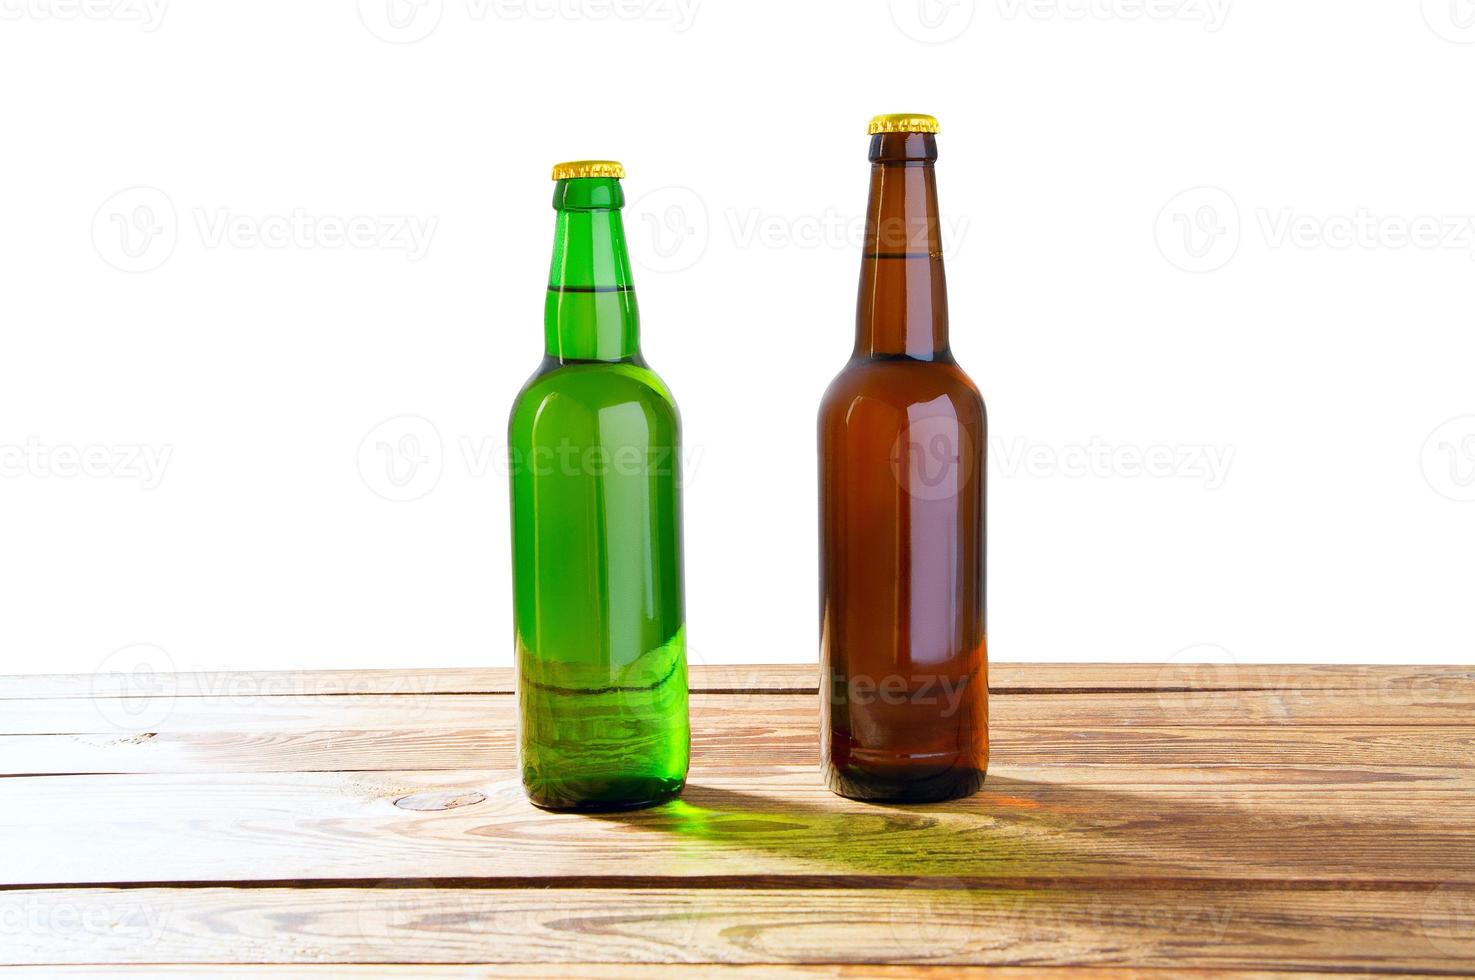 foto de dos botellas de cerveza llenas diferentes sin etiquetas. Trazado de recorte separado para cada botella incluida. Dos fotos separadas fusionadas. Botellas de vidrio de cerveza diferente sobre fondo blanco claro